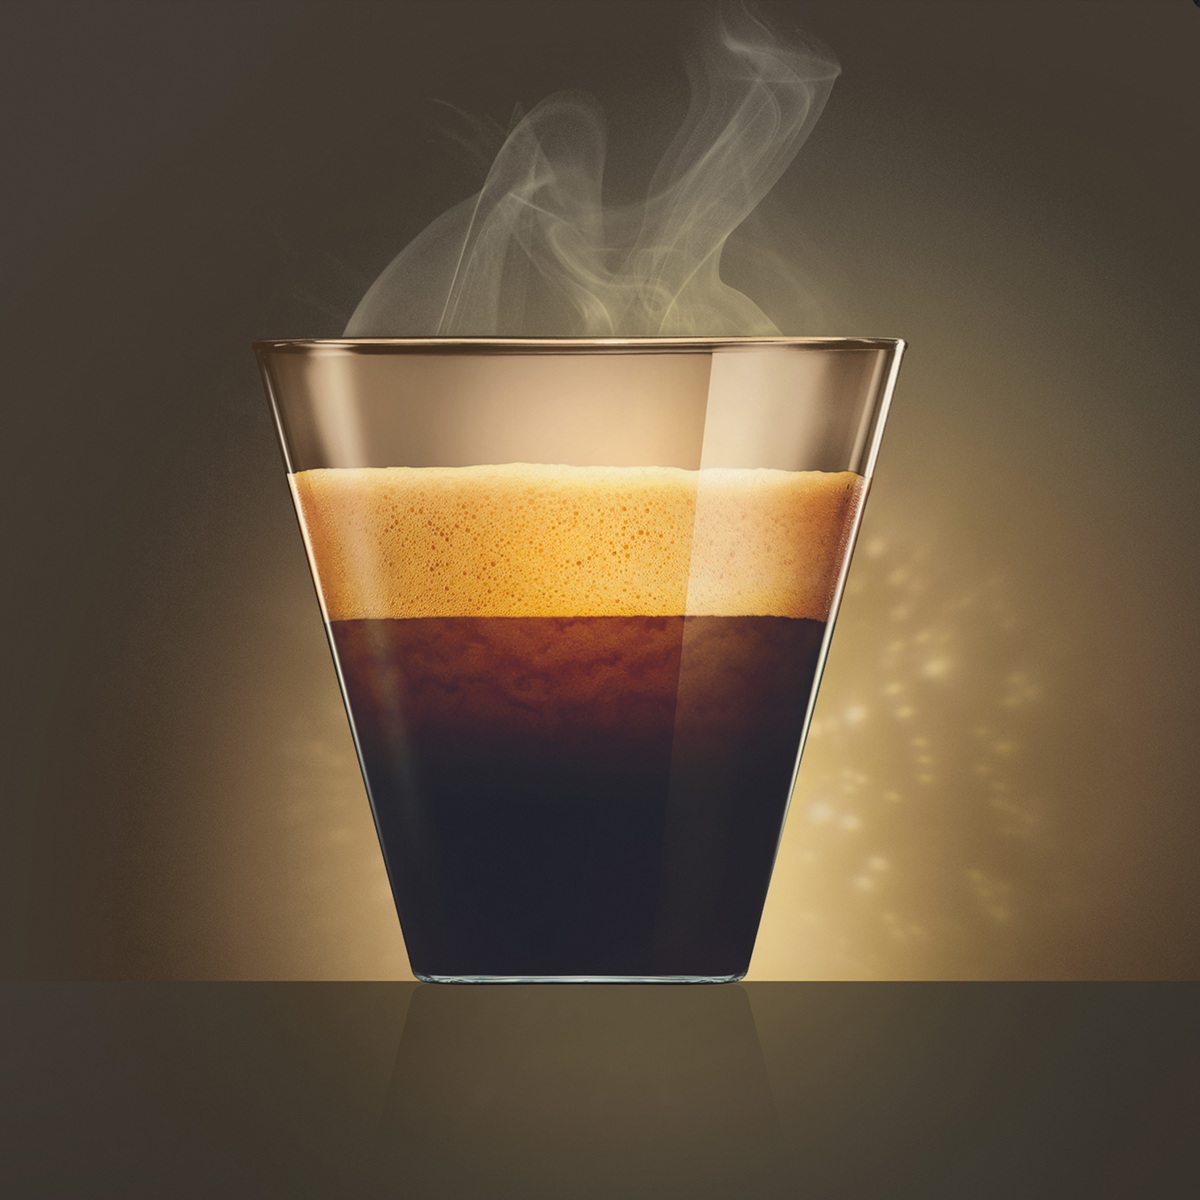 Nescafe Dolce Gusto Espresso Intenso 112 g